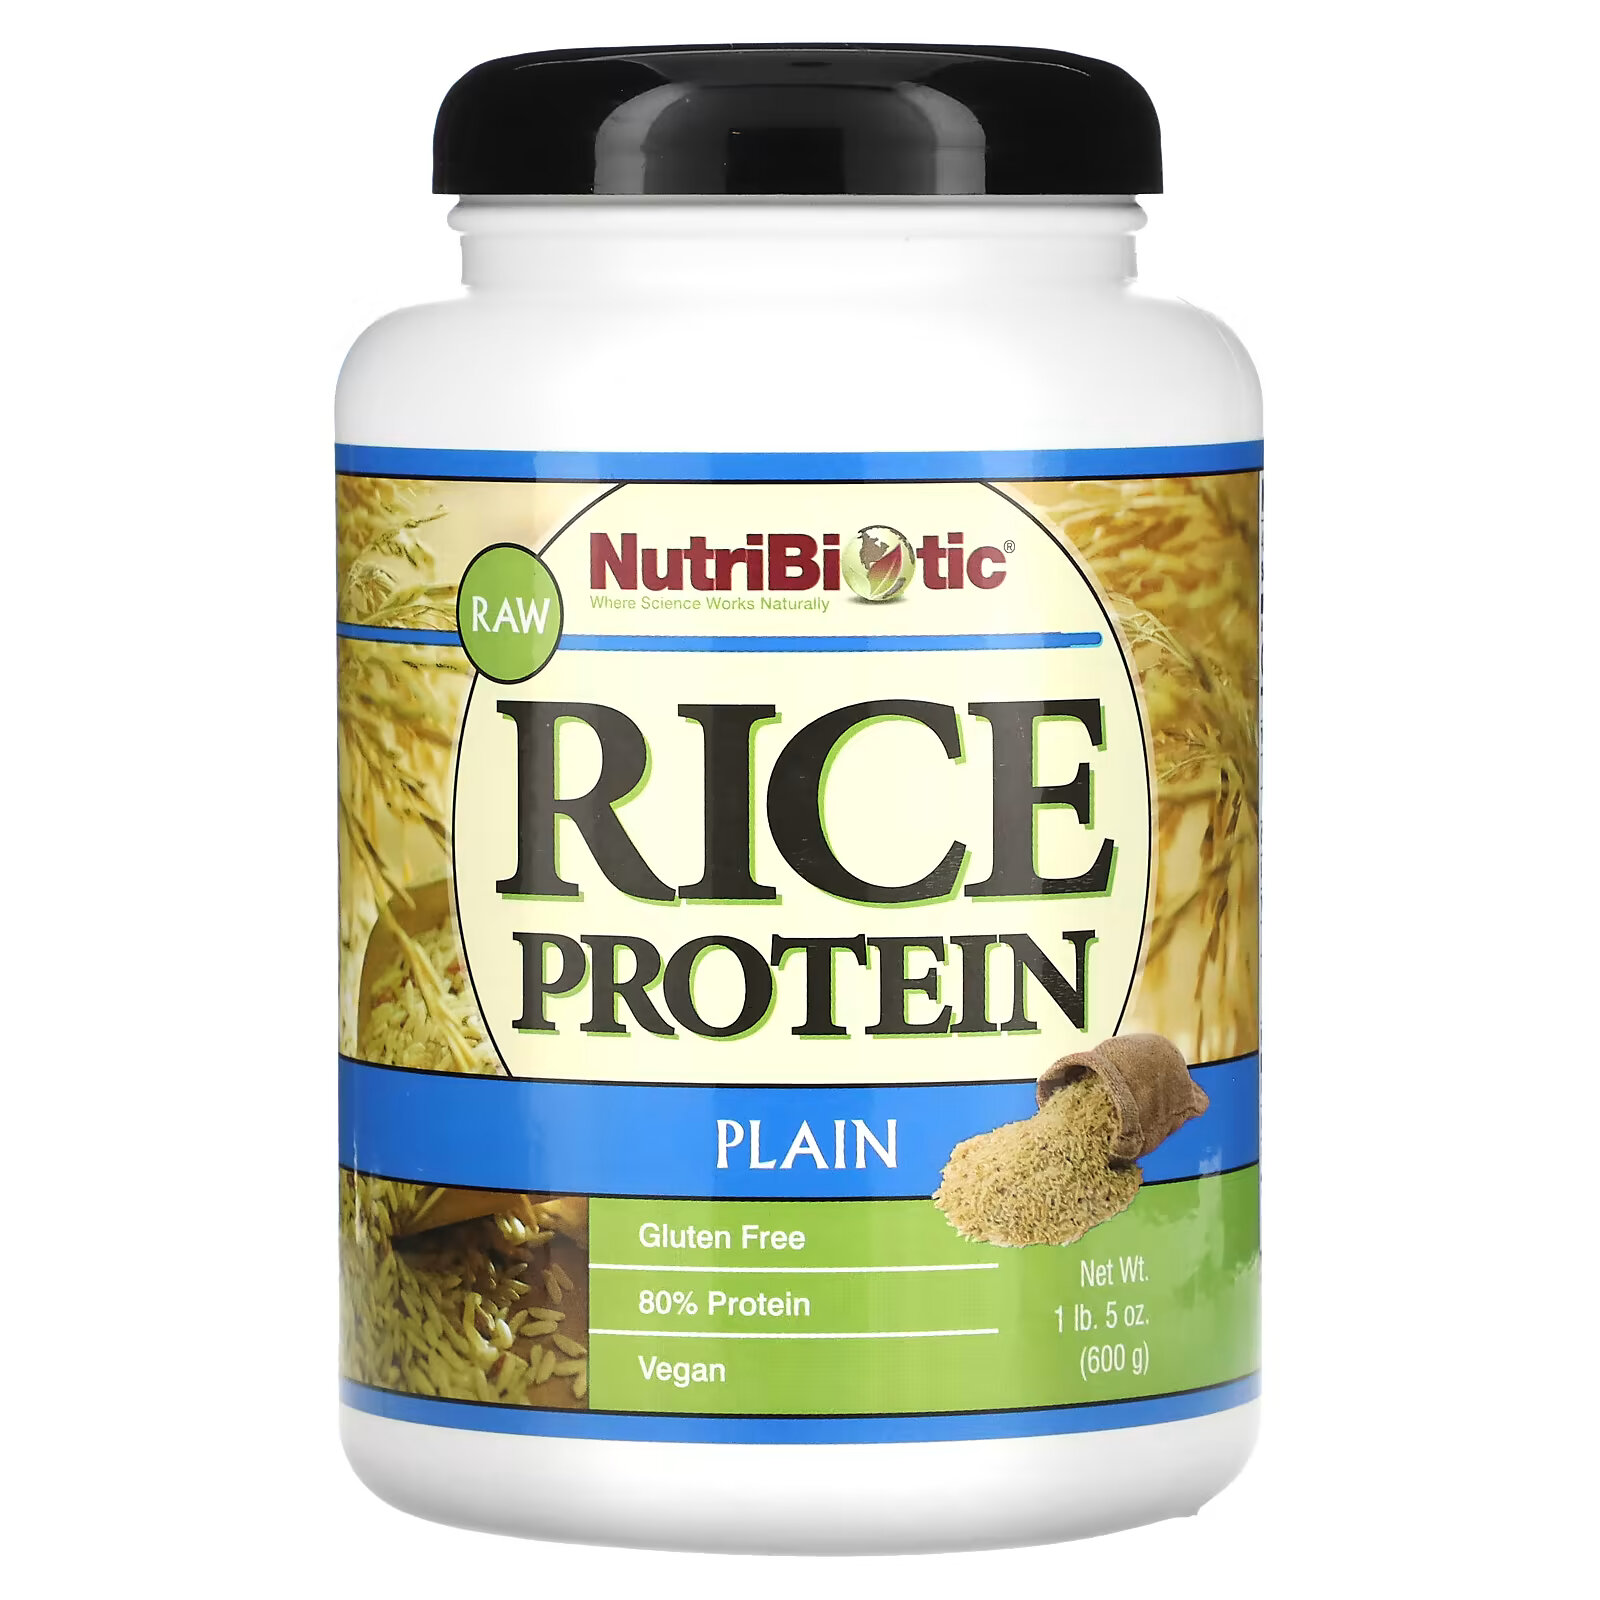 NutriBiotic, Сырой простой рисовый белок, 1 фунт 5 унций (600 г) nutribiotic рисовый белок с шоколадом 1 фунт и 6 9 унций 650 г